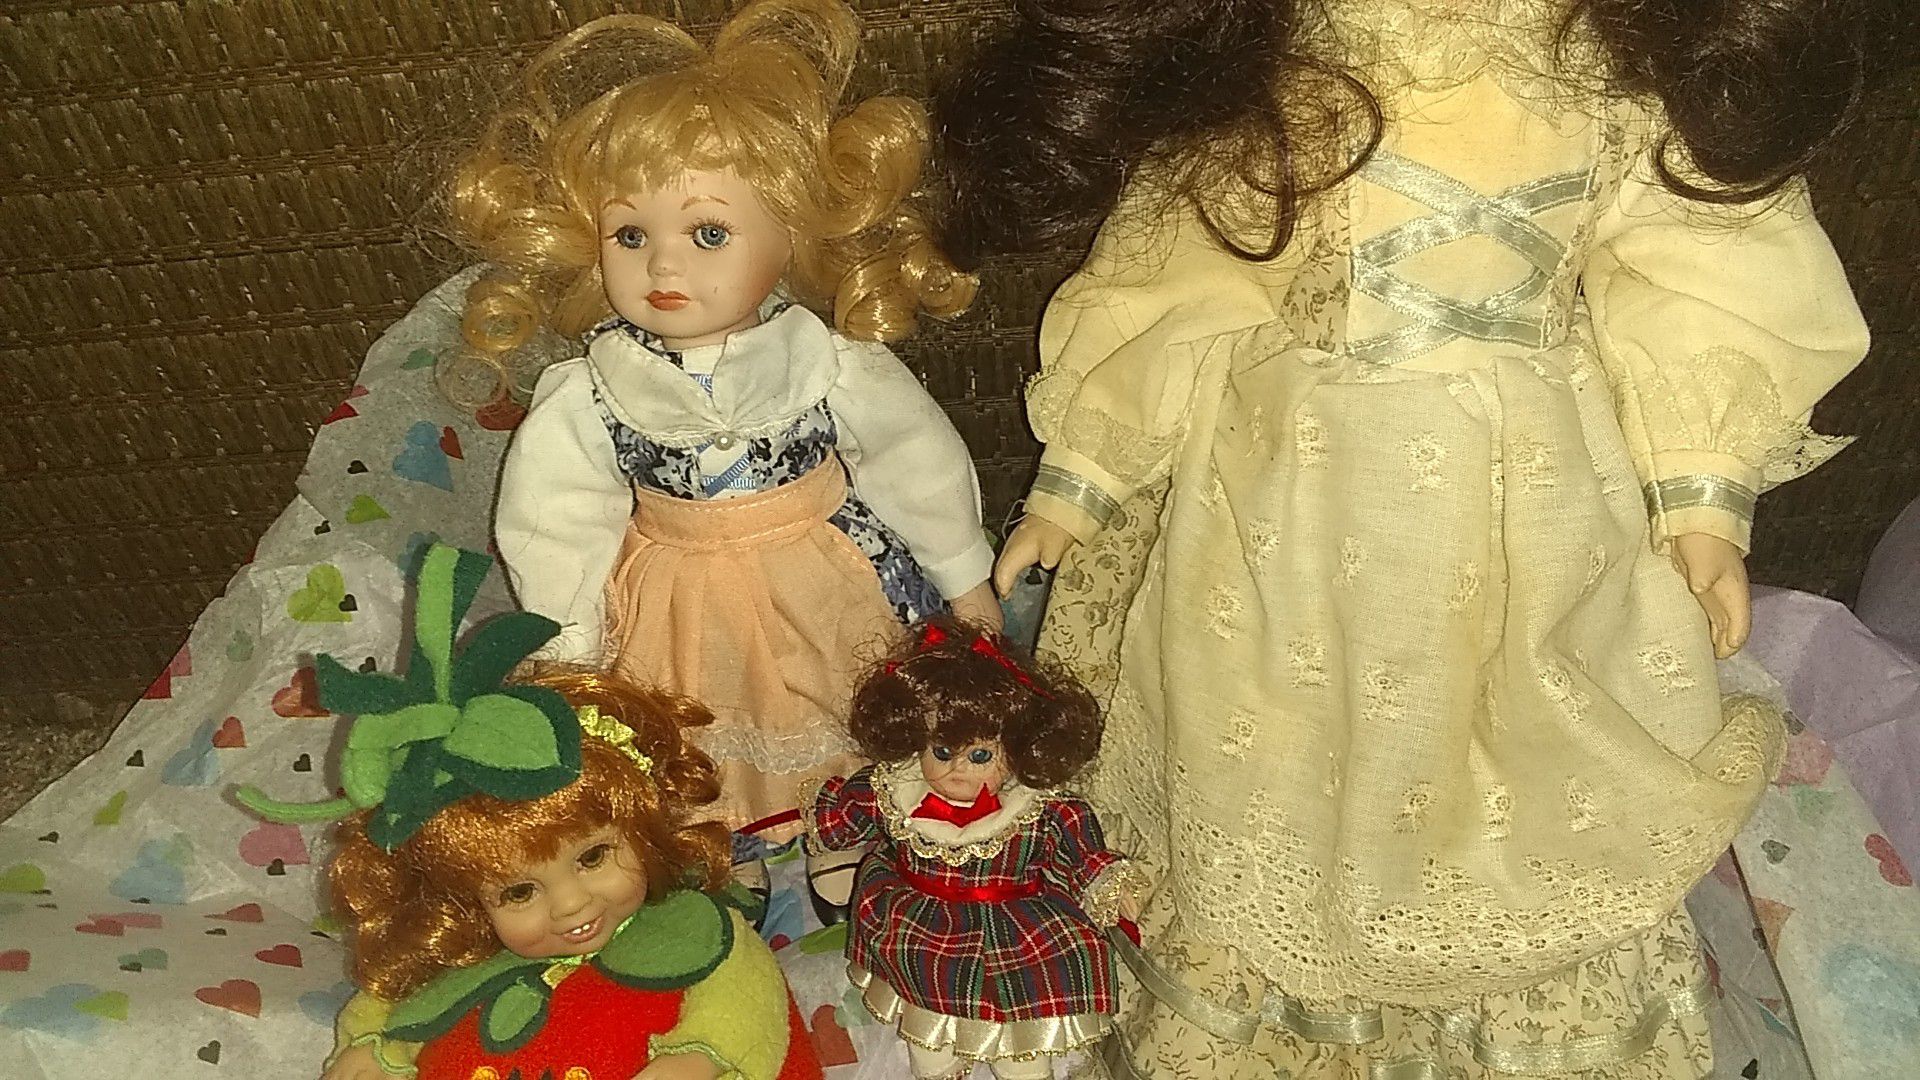 4 porcelain dolls